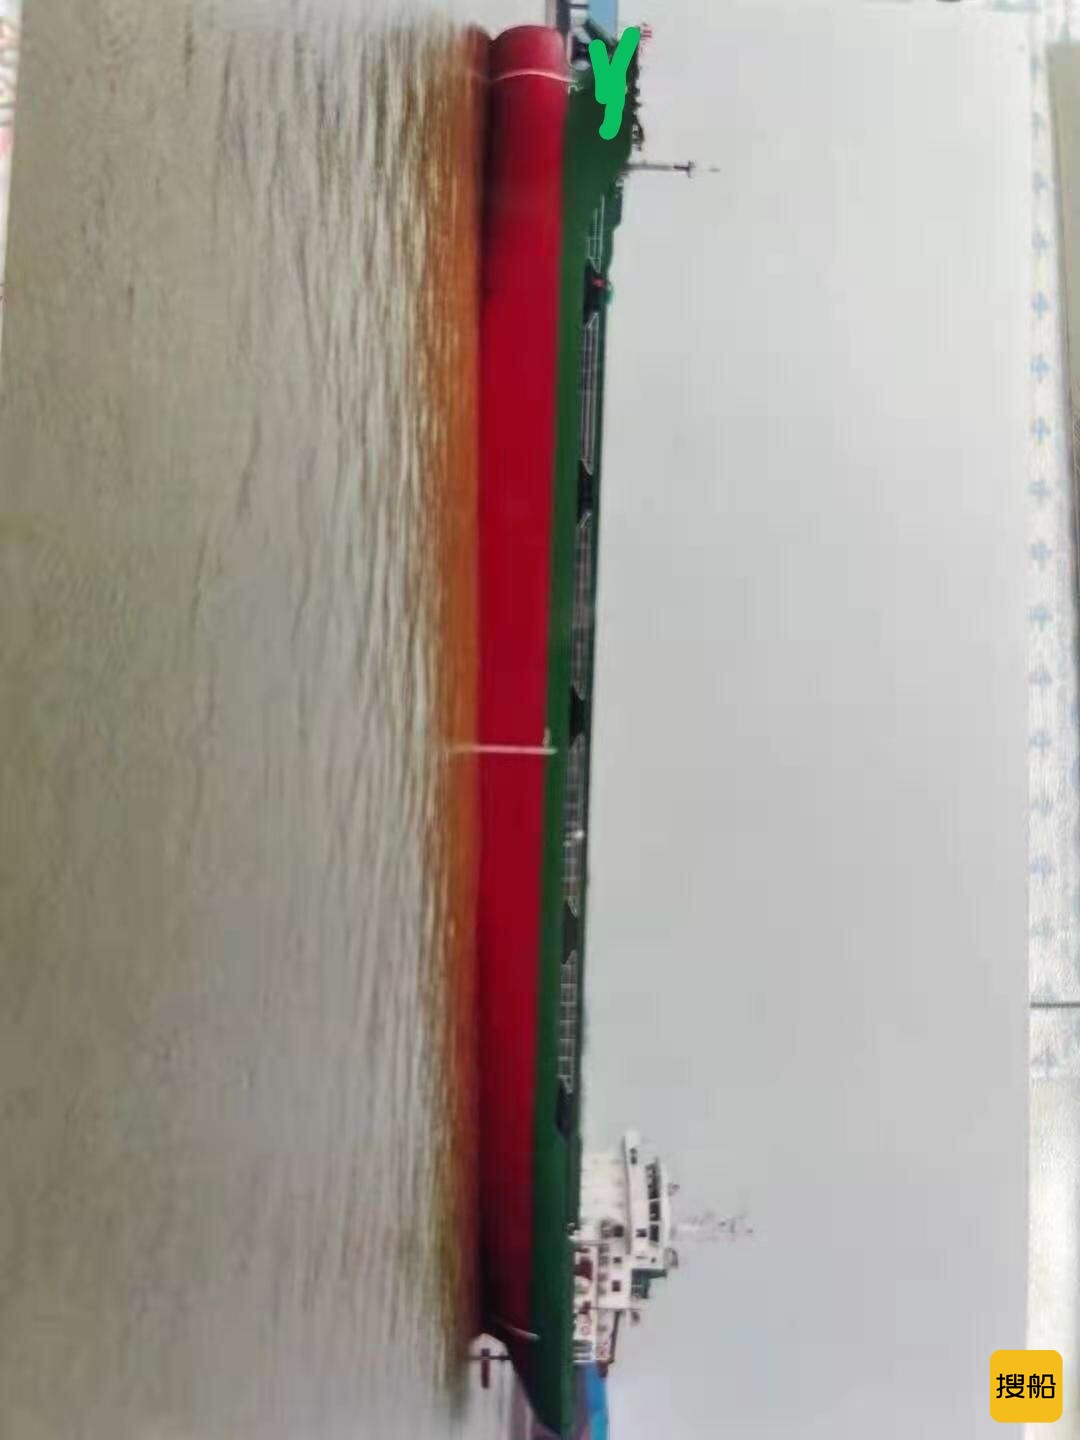 出卖7296吨集货船2017年zc江苏制内地 浙江 温州市-2.jpg